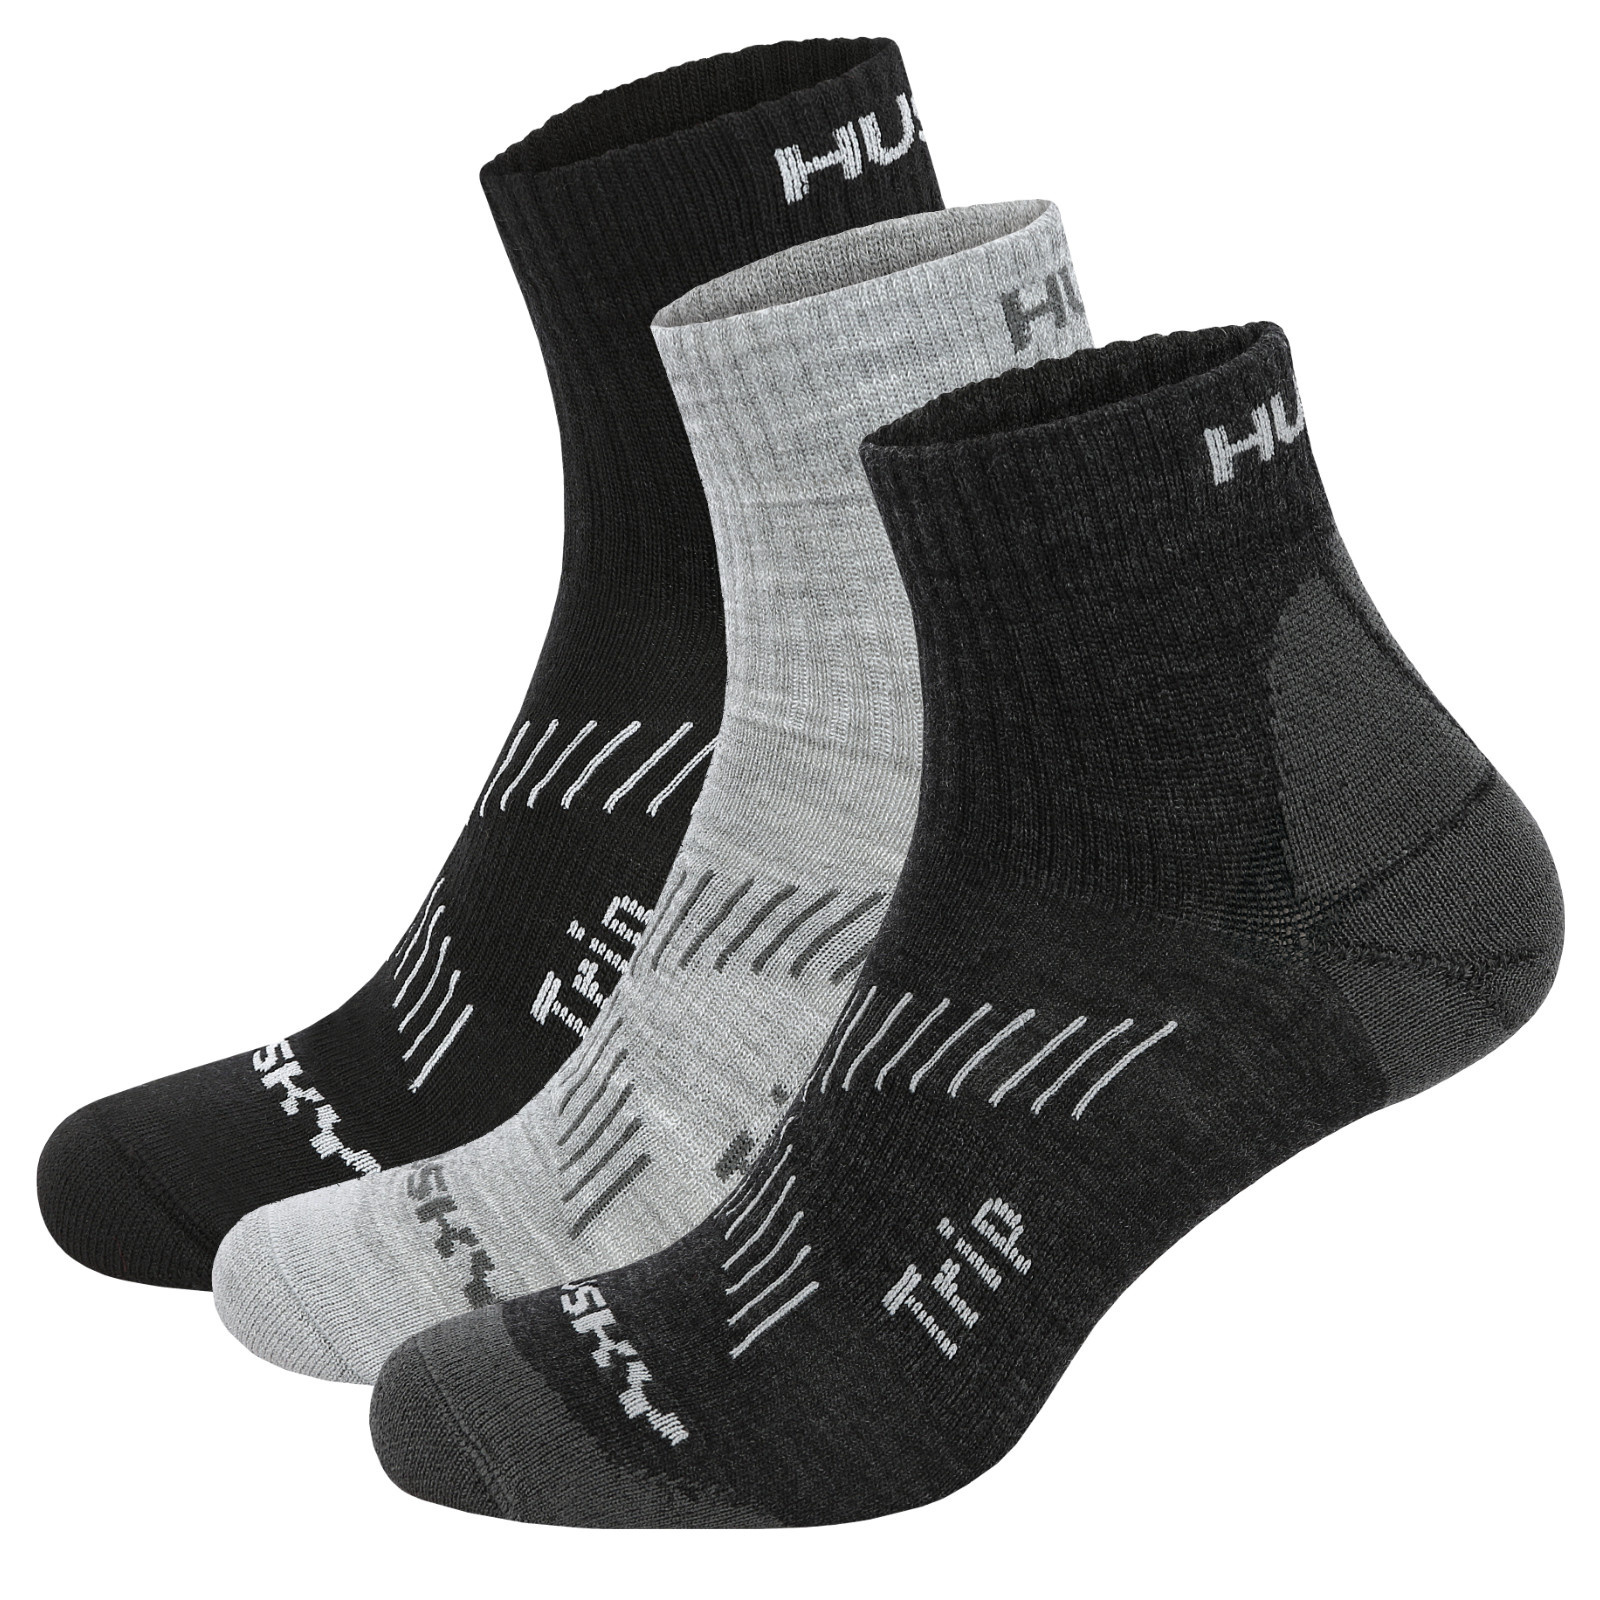 E-shop Husky Ponožky Trip 3pack černá/sv. šedá/tm. šedá